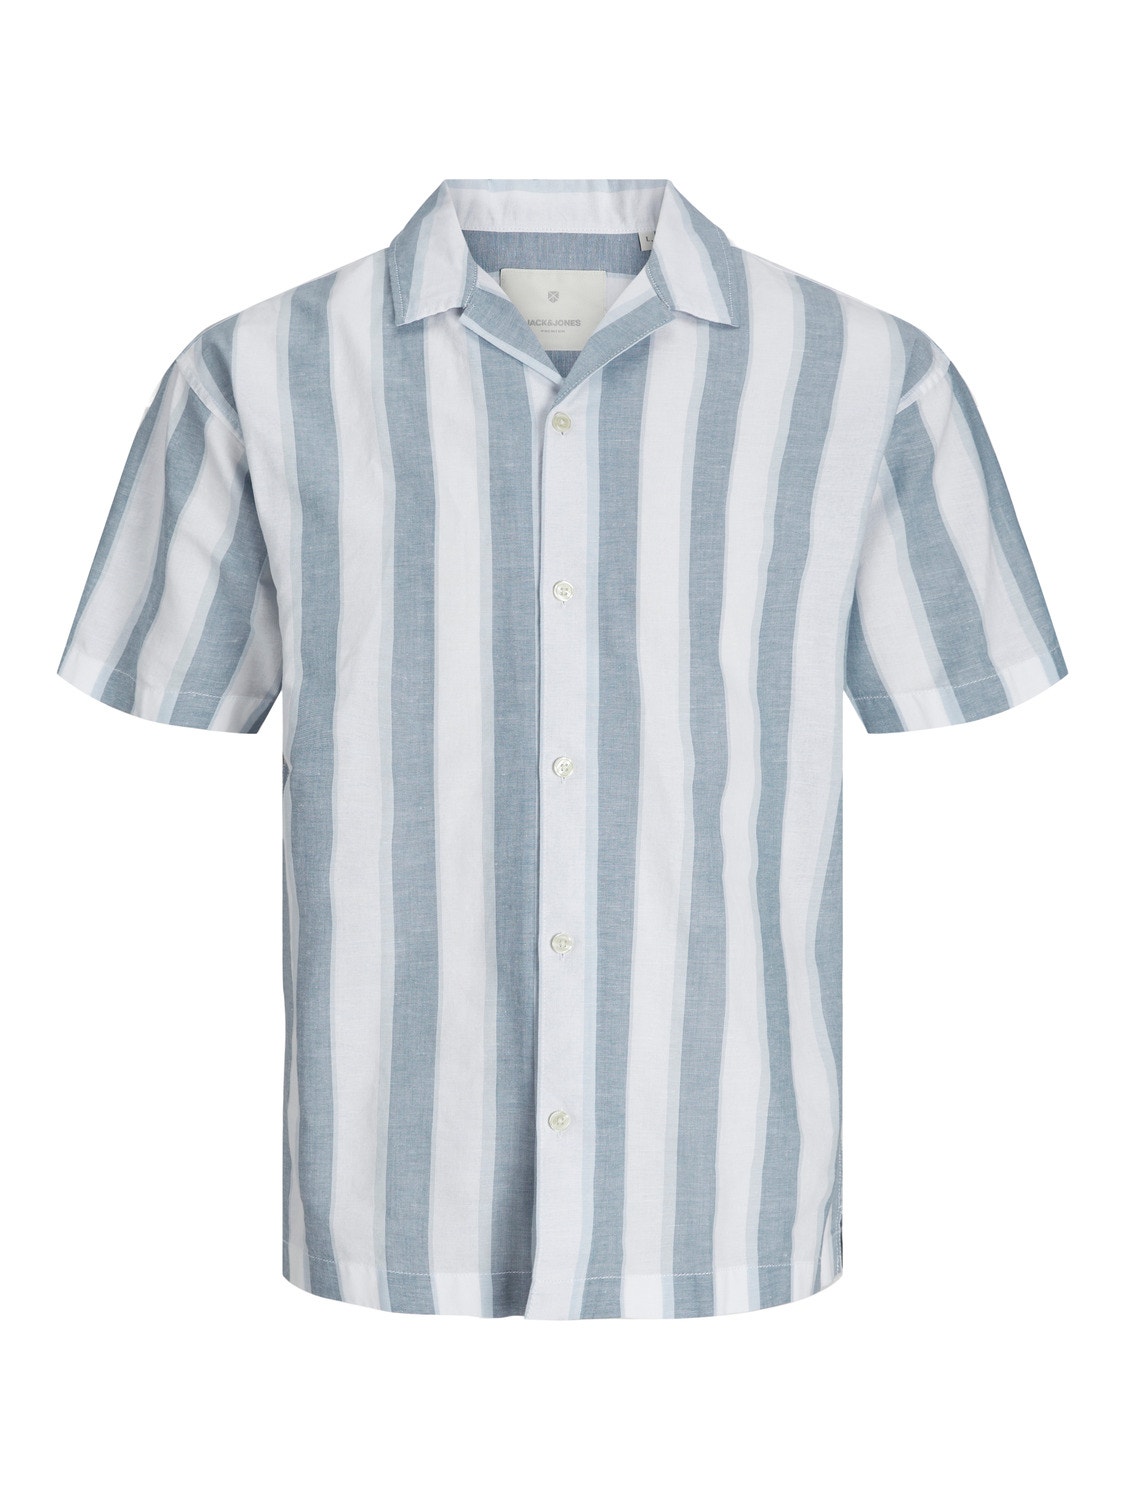 Jack & Jones Plus Size Camisa Loose Fit -Captains Blue - 12255142